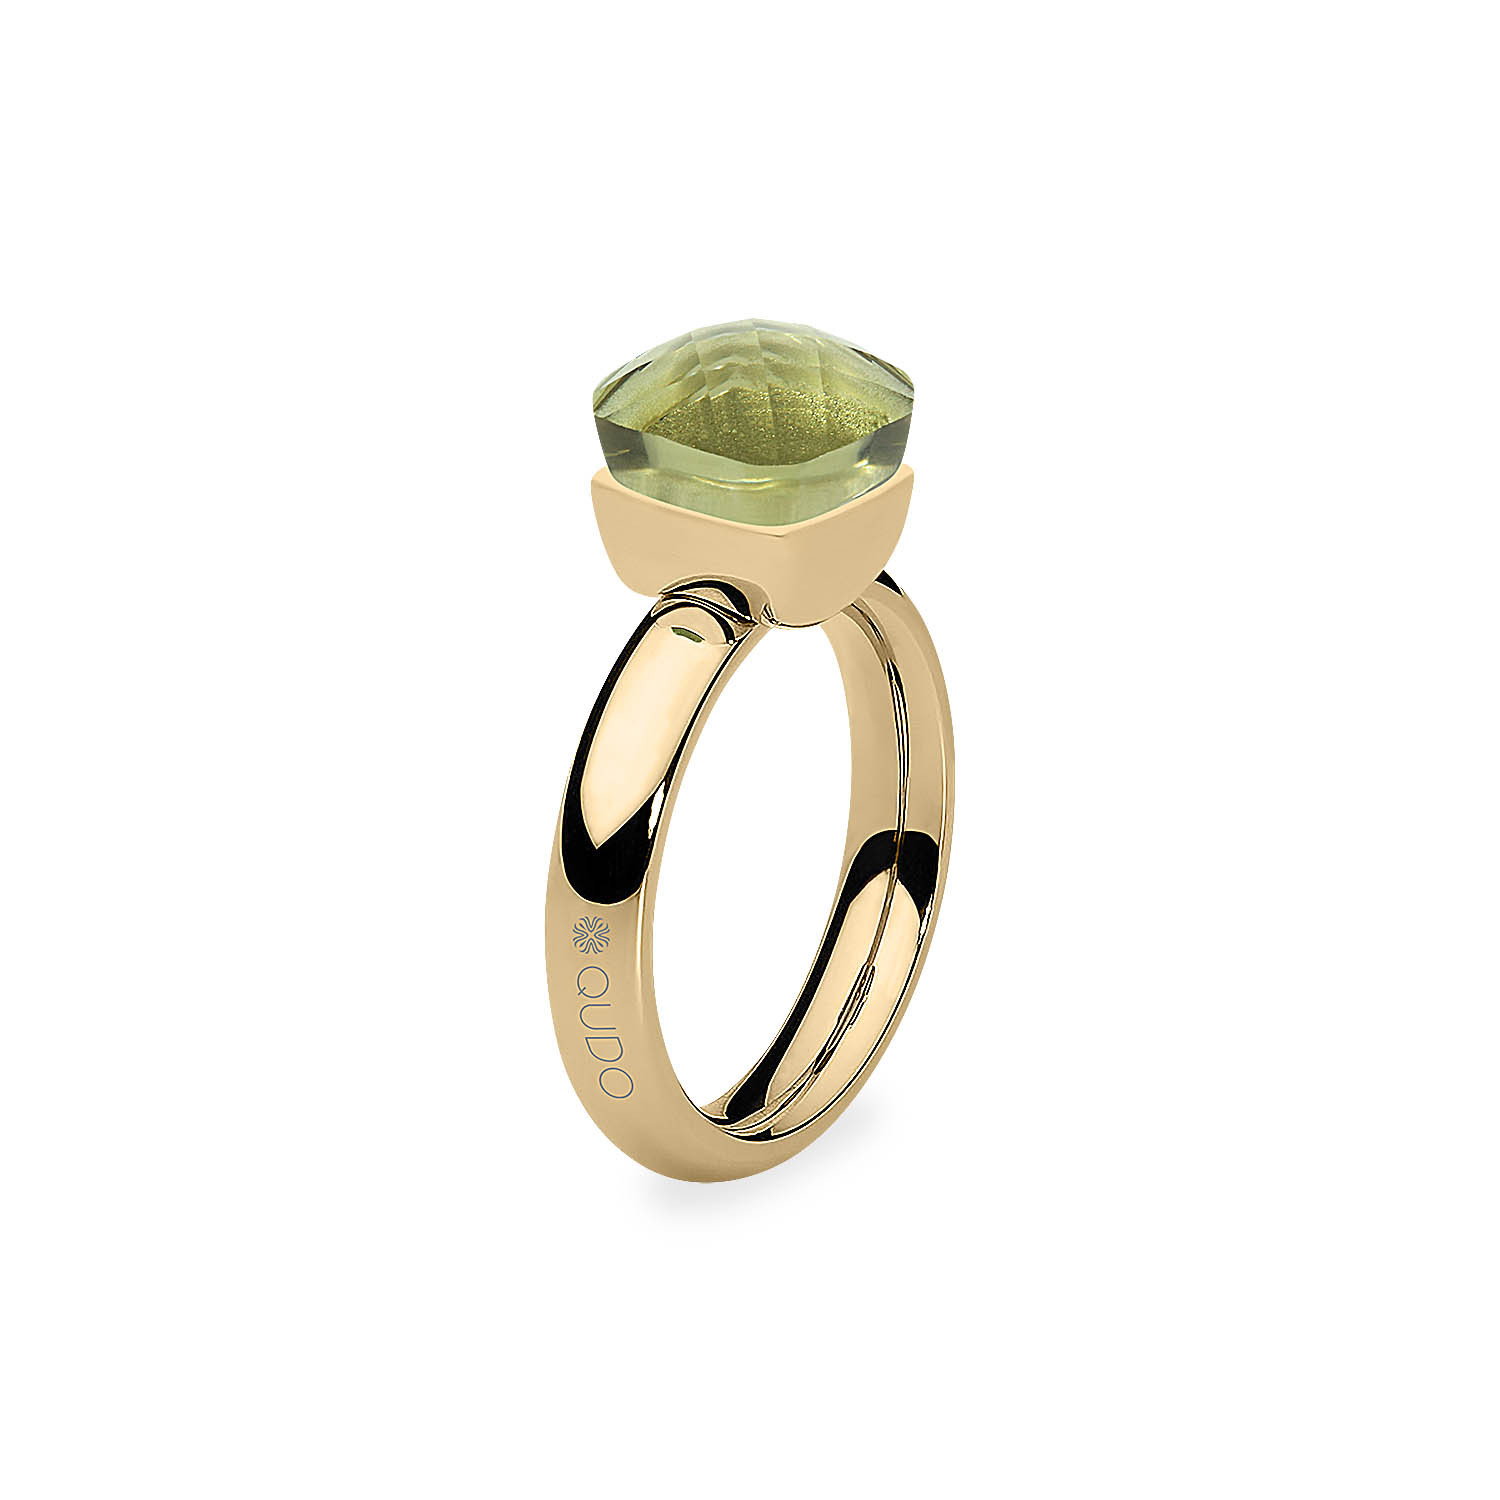 Pierścionek QUDO złoty z zielonym szklanym kryształem